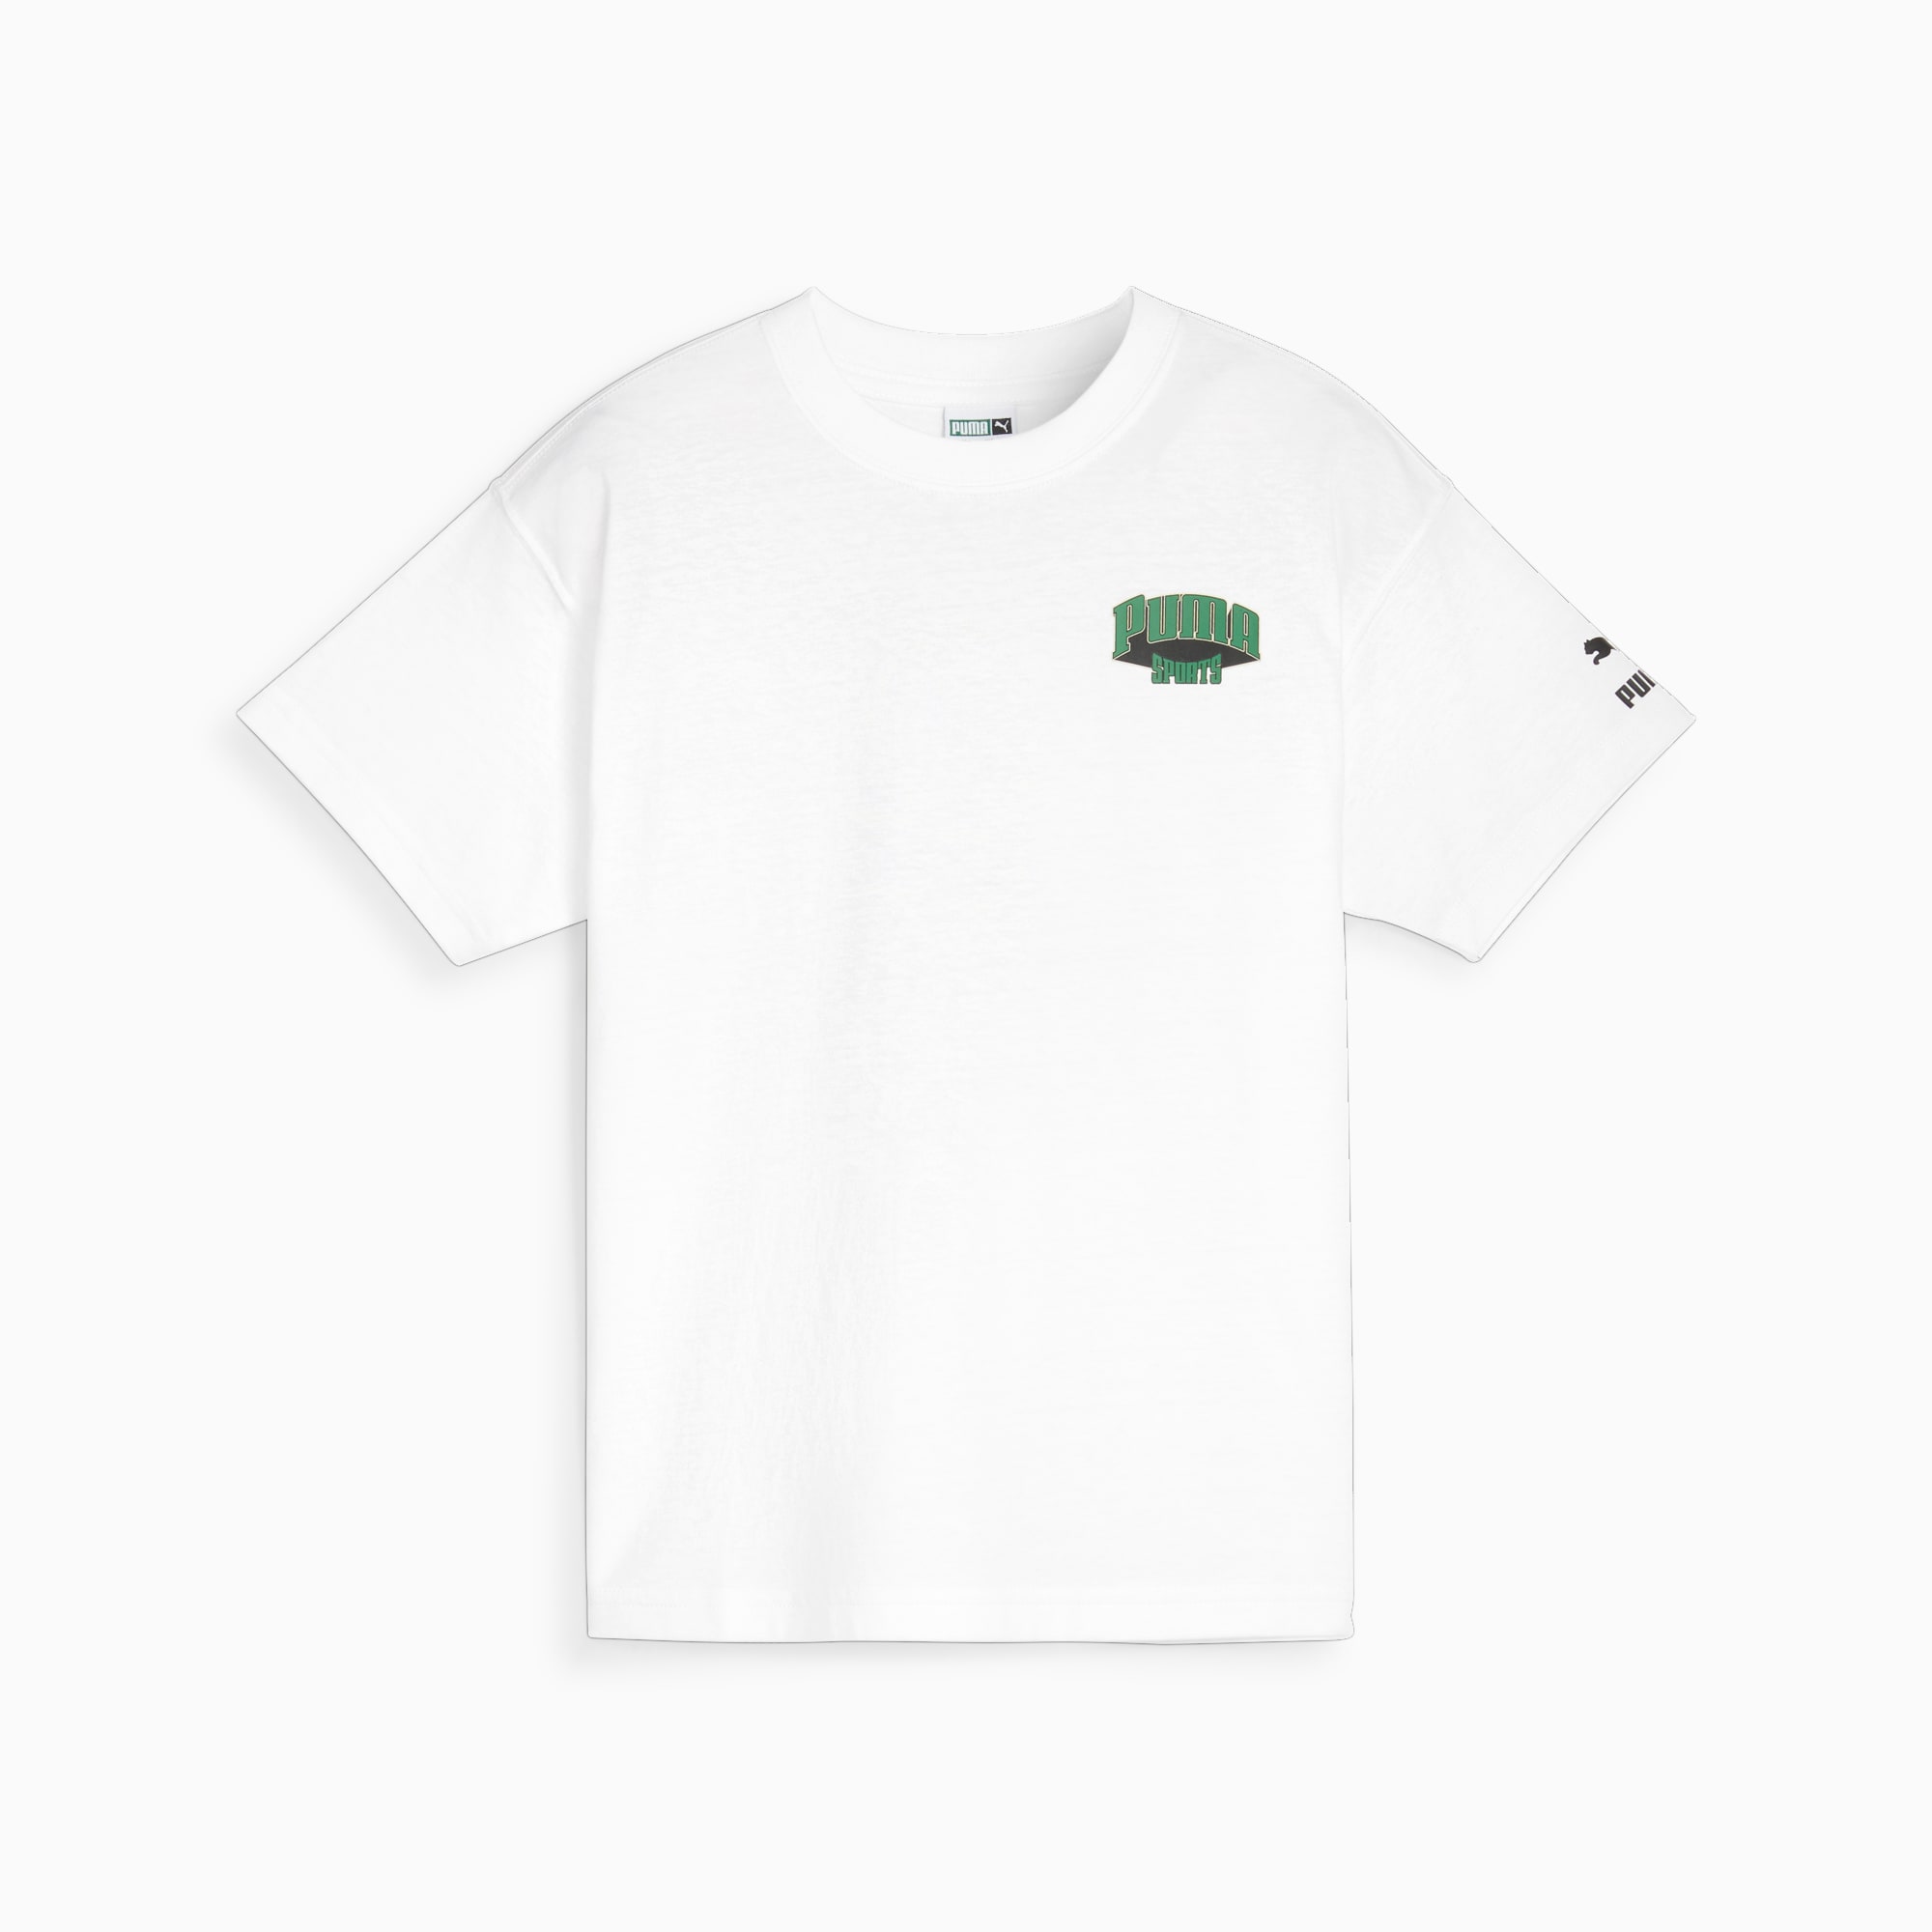 PUMA FOR THE FANBASE Graphic T-Shirt Teenager Für Kinder, Weiß, Größe: 128, Kleidung